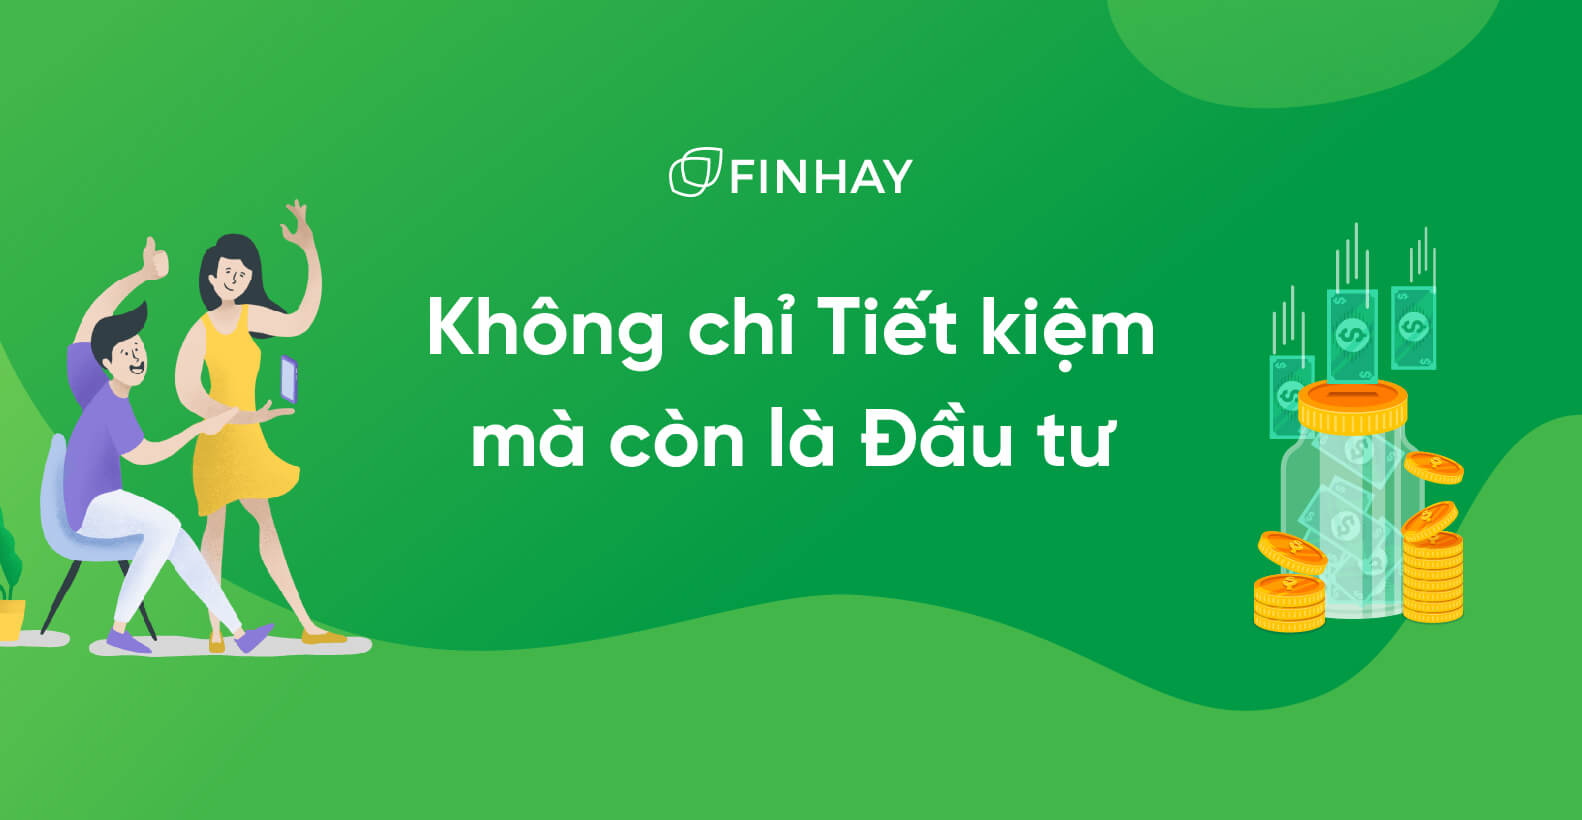 Tìm hiểu những thông tin cơ bản về Finhay